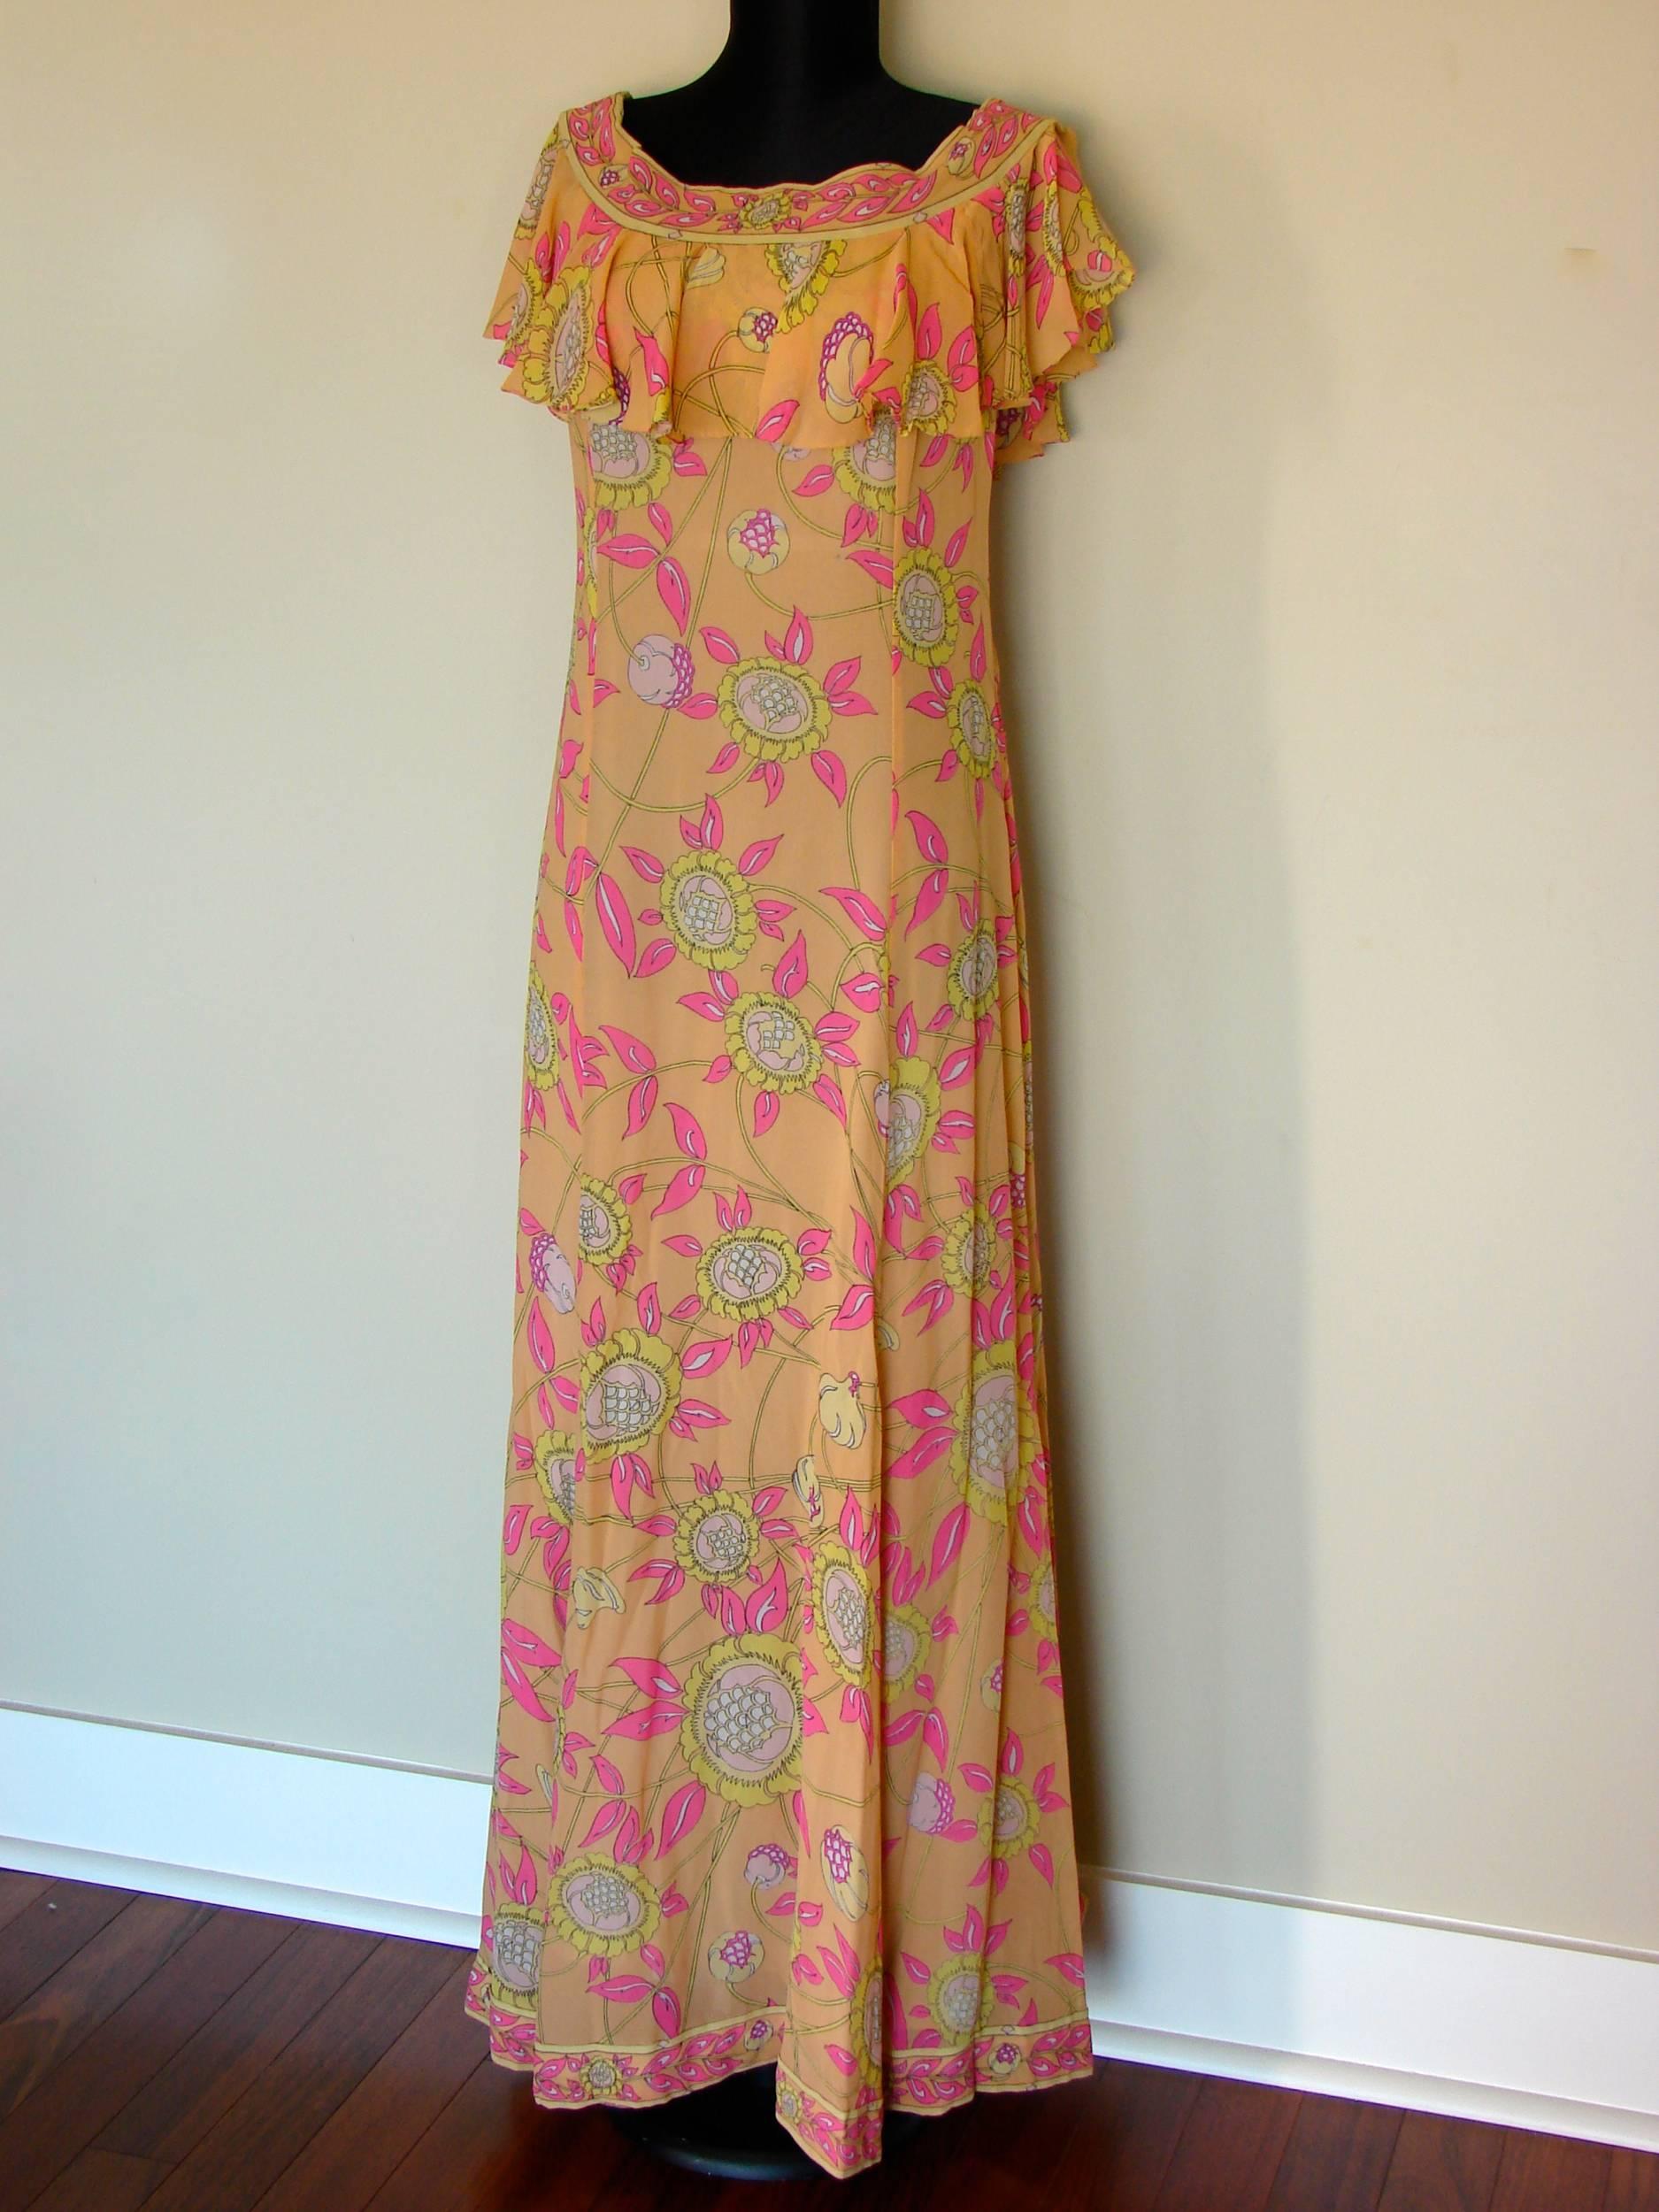 Emilio Pucci Silk Chiffon Ruffle Maxi Dress Bright Sunflower Print Deadstock 70s 2